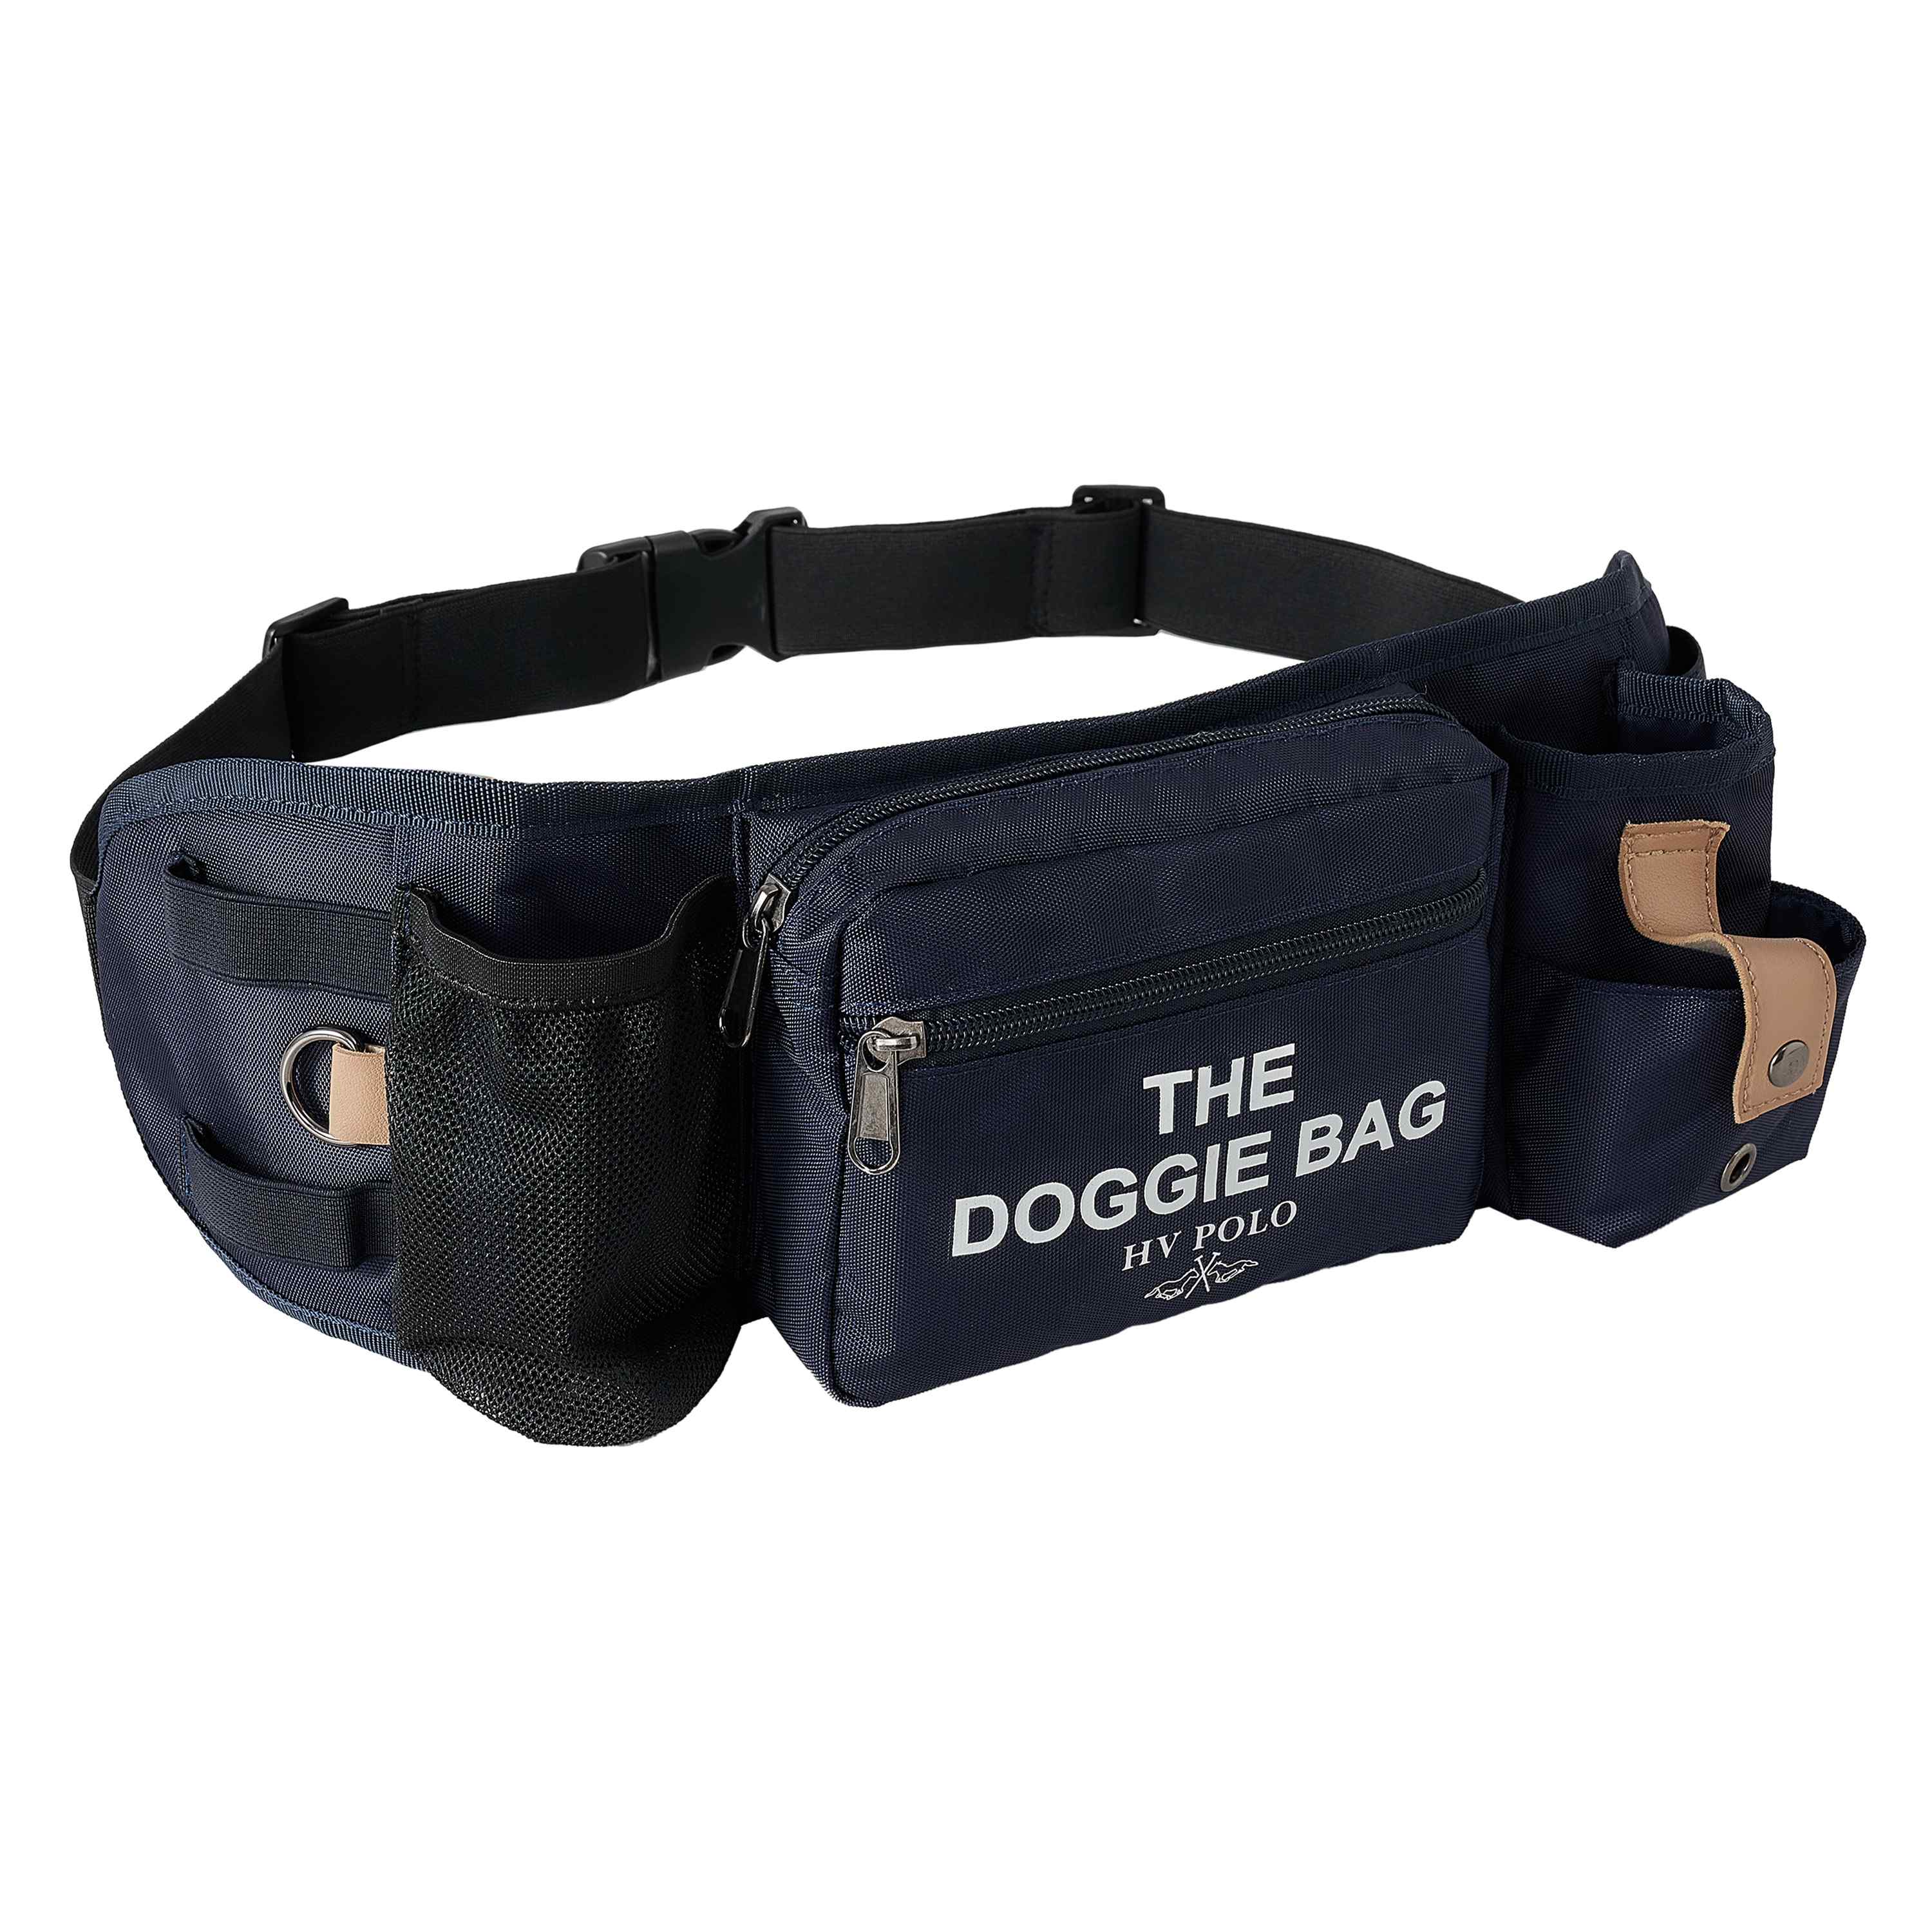 Doggie bag HVPDacy